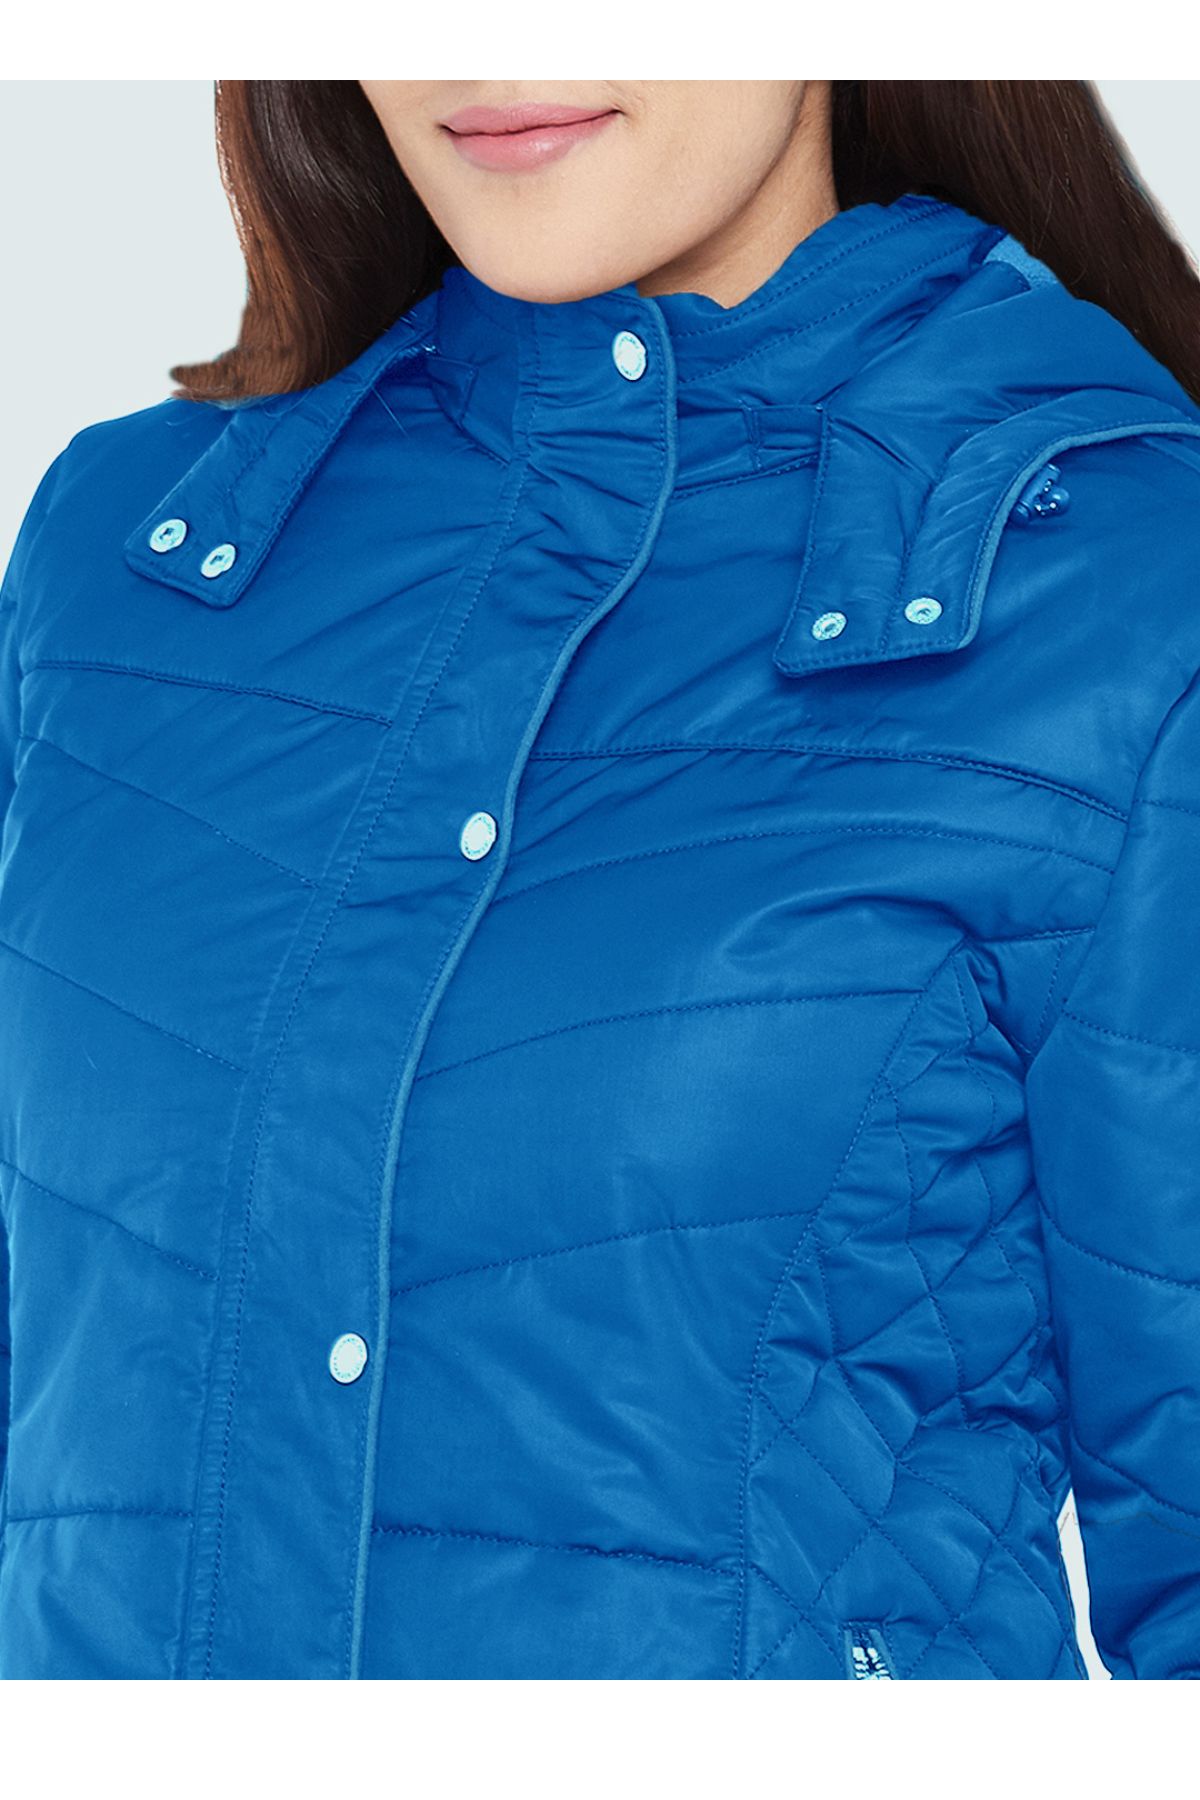 Blue Fleece Lined Puffer Jacket | Women